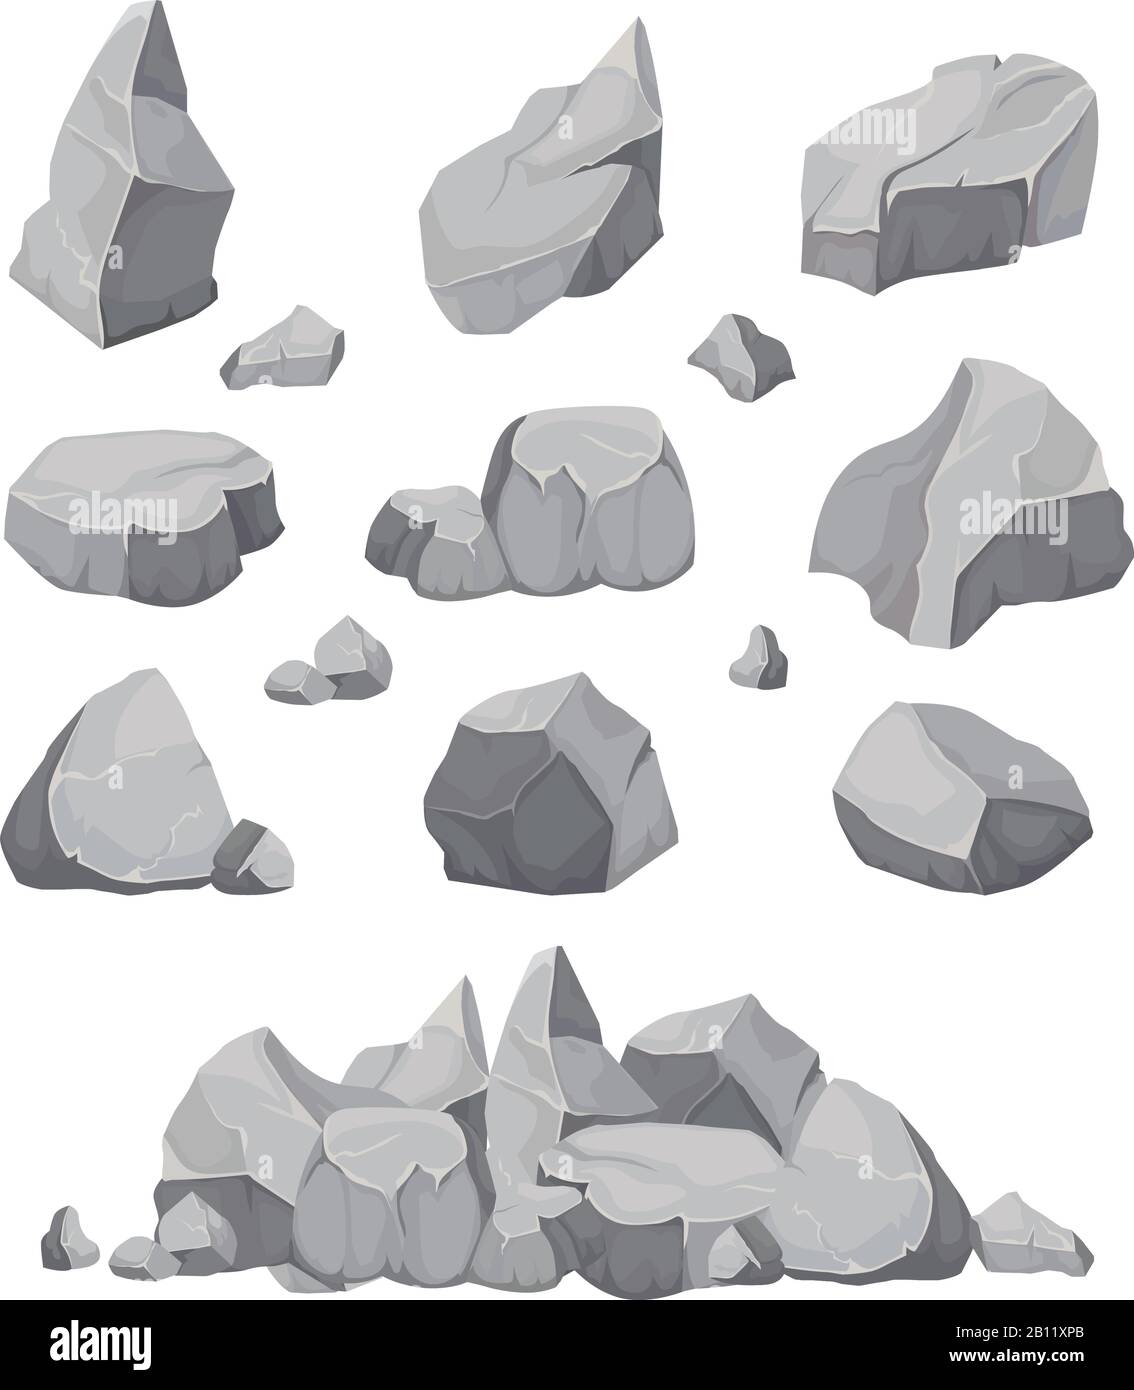 Pierres de roche. La pierre graphite, le charbon et les roches pirent une illustration vectorielle isolée Illustration de Vecteur